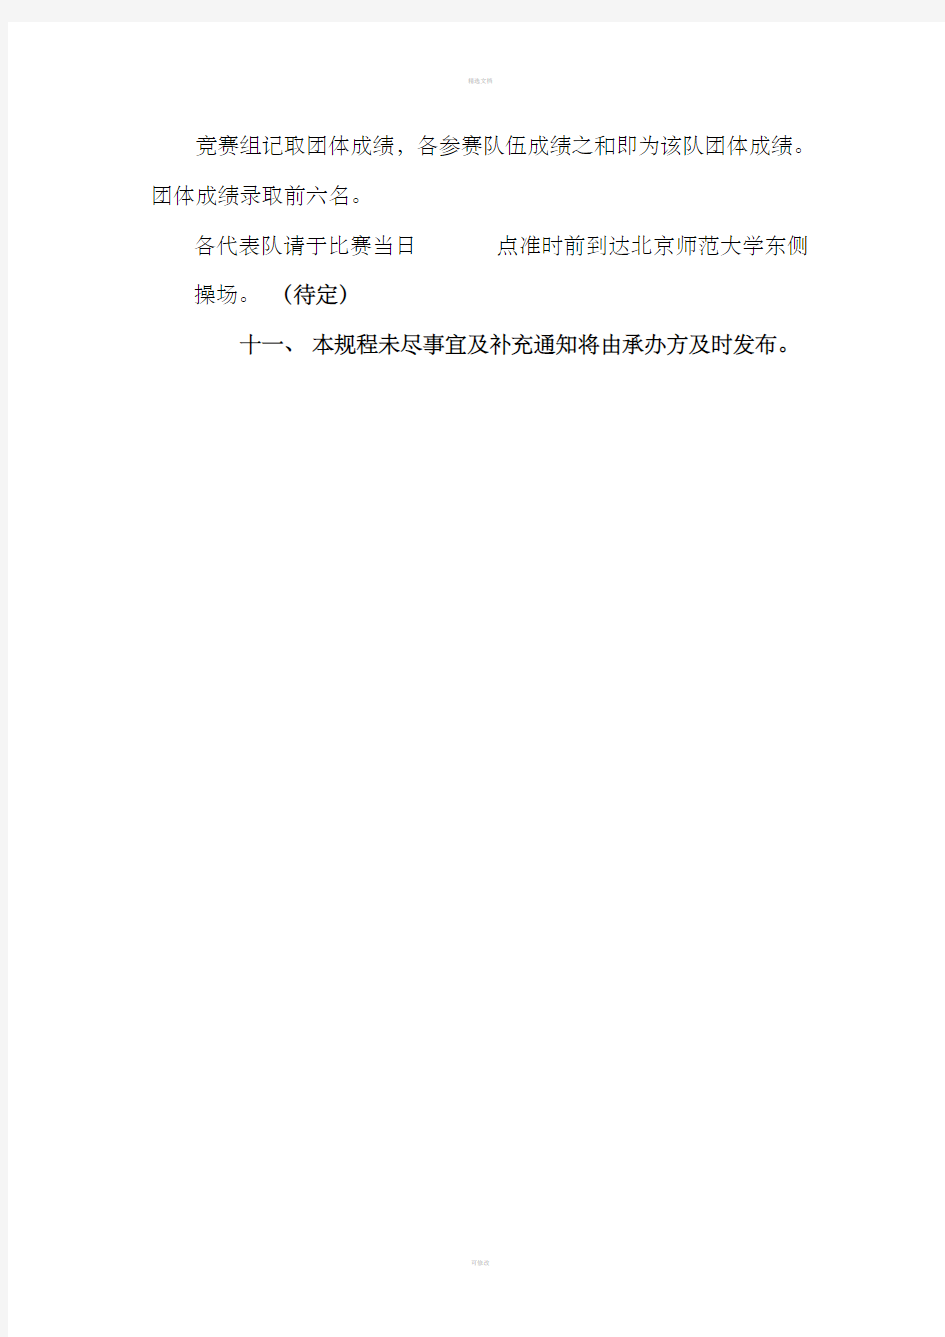 北京师范大学校运会校园定向越野比赛竞赛规程